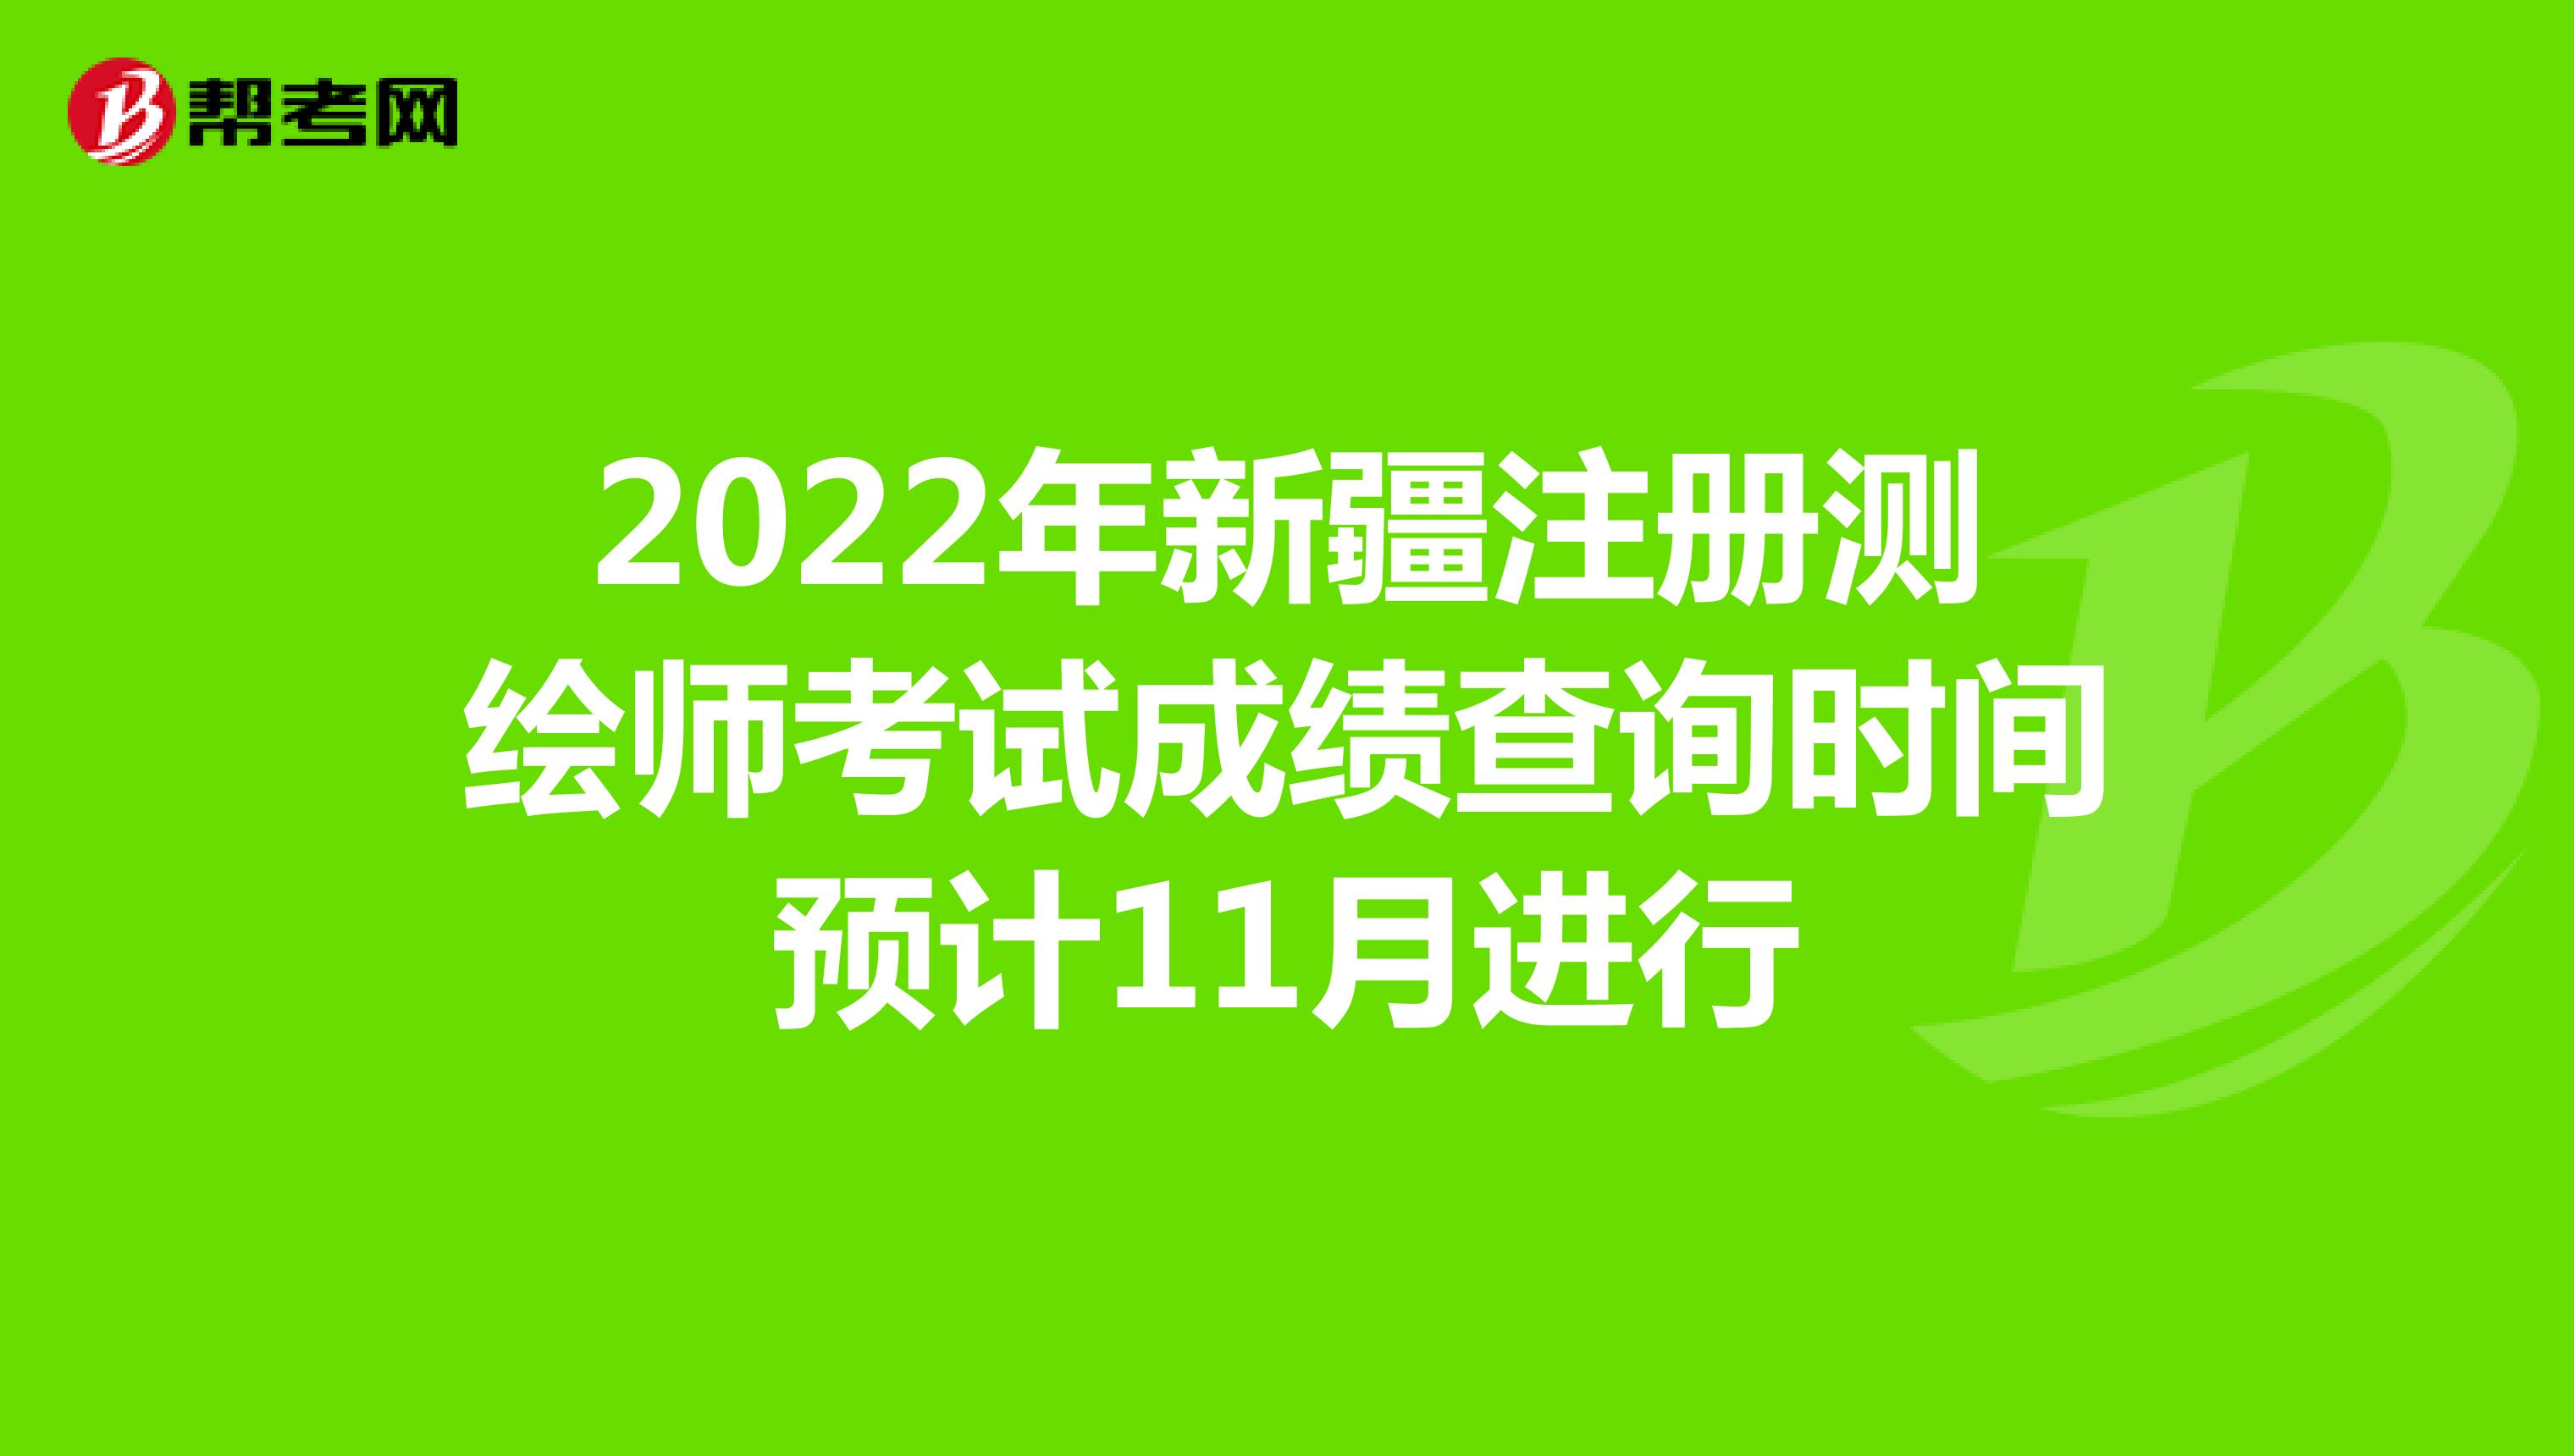 2022年新疆注册测绘师考试成绩查询时间预计11月进行